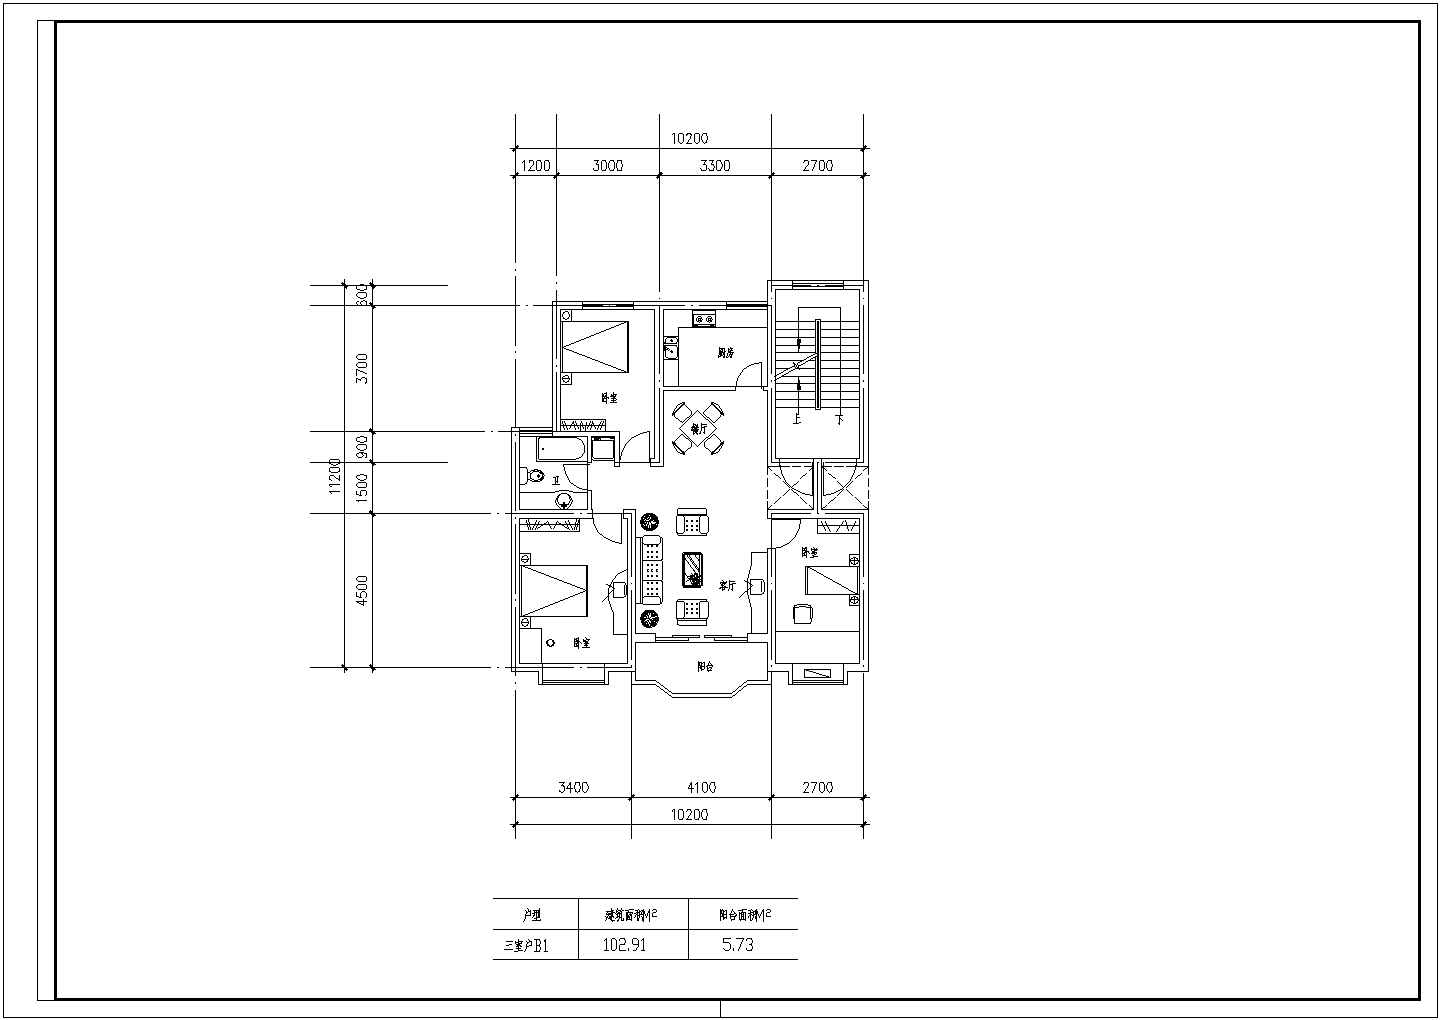 100至180平方米住宅户型设计图【独户、3室2厅、4室2厅】